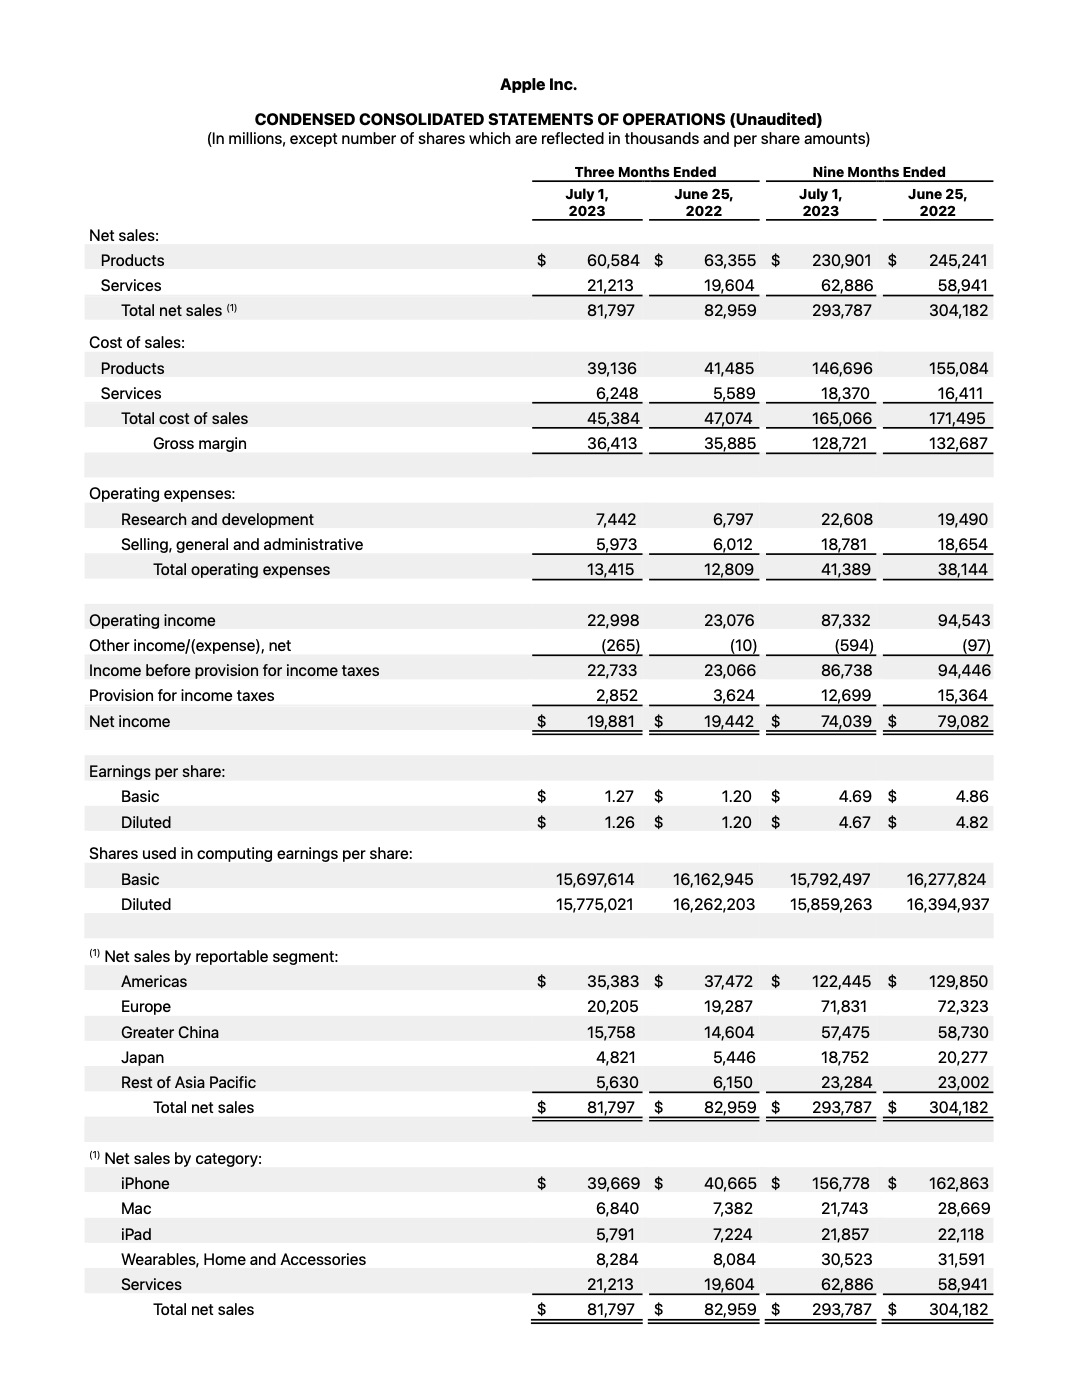 Apple Reports Q3 FY23 Earnings: $81.8 Billion in Revenue, $19.9 Billion in Net Income [Chart]